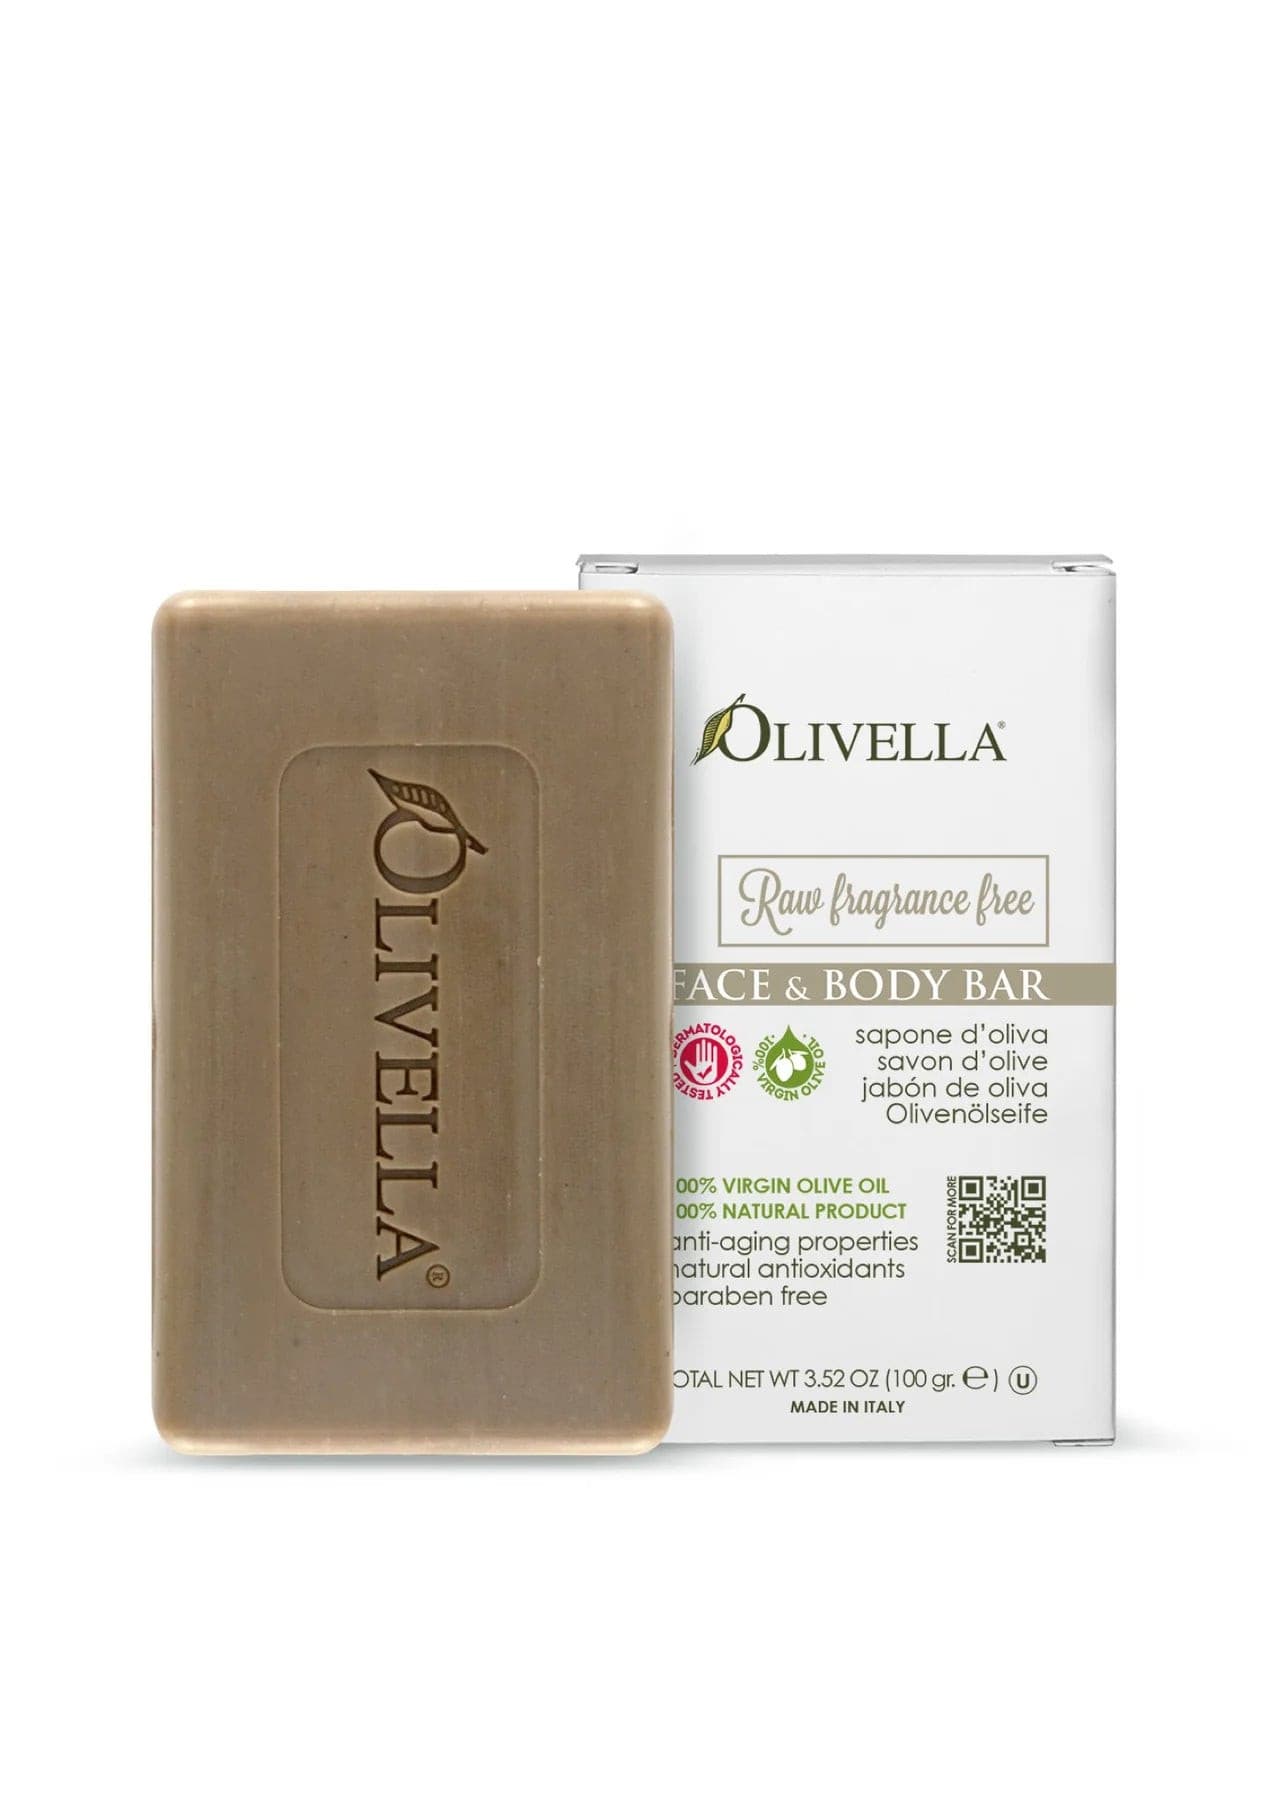 Olivella F&B Raw Fragrance F Bar Soap 3.52 Oz.